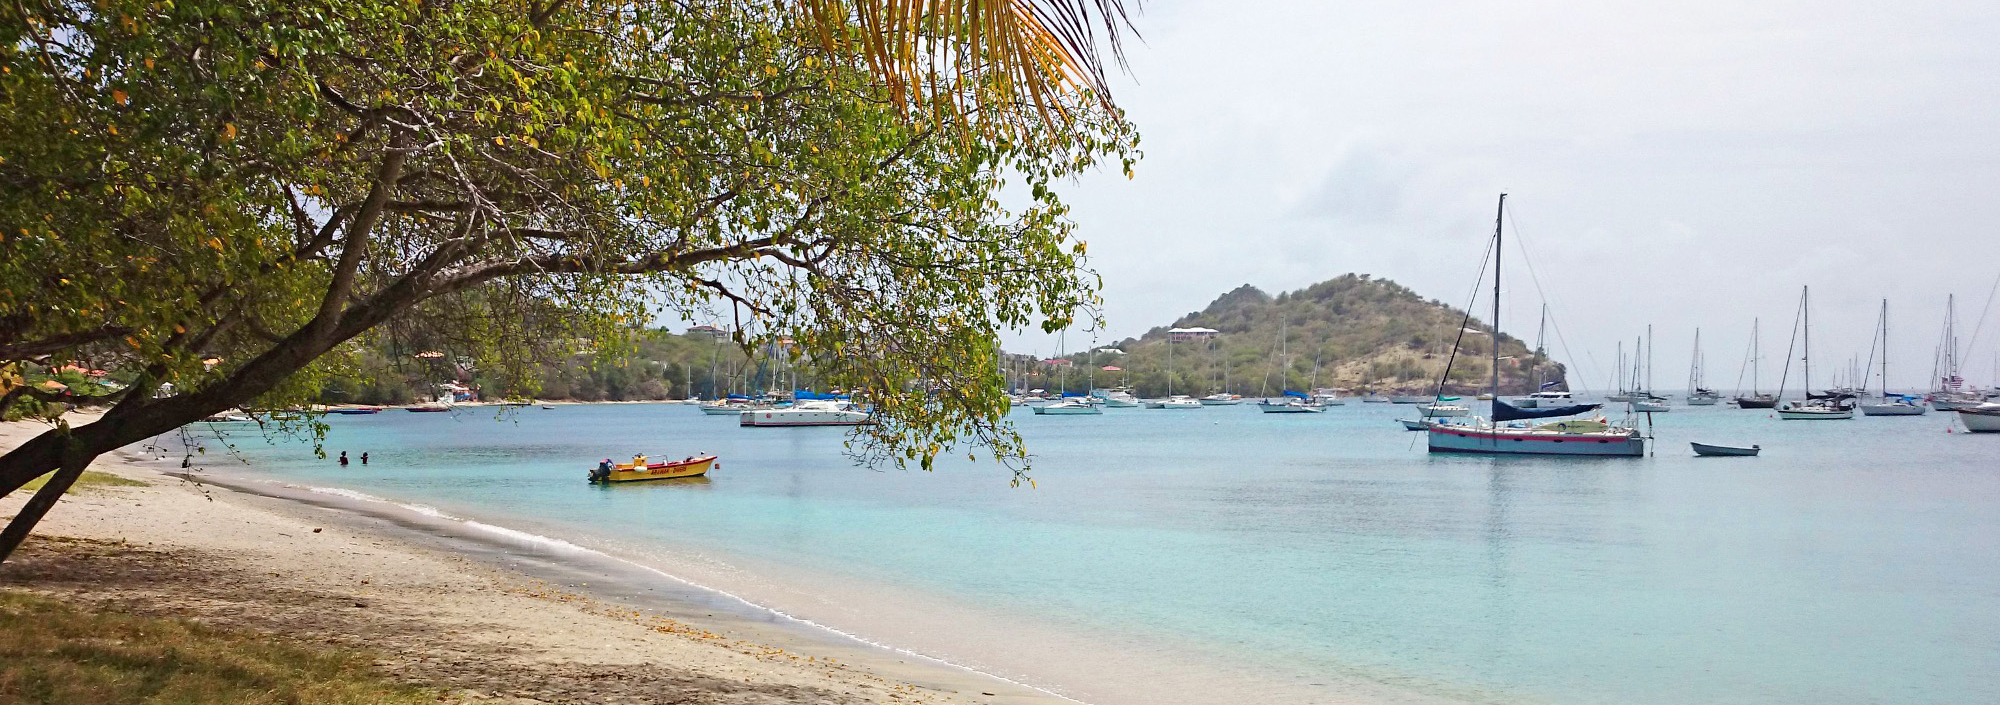 Bucht in den Grenadinen mit ankernden Jachten